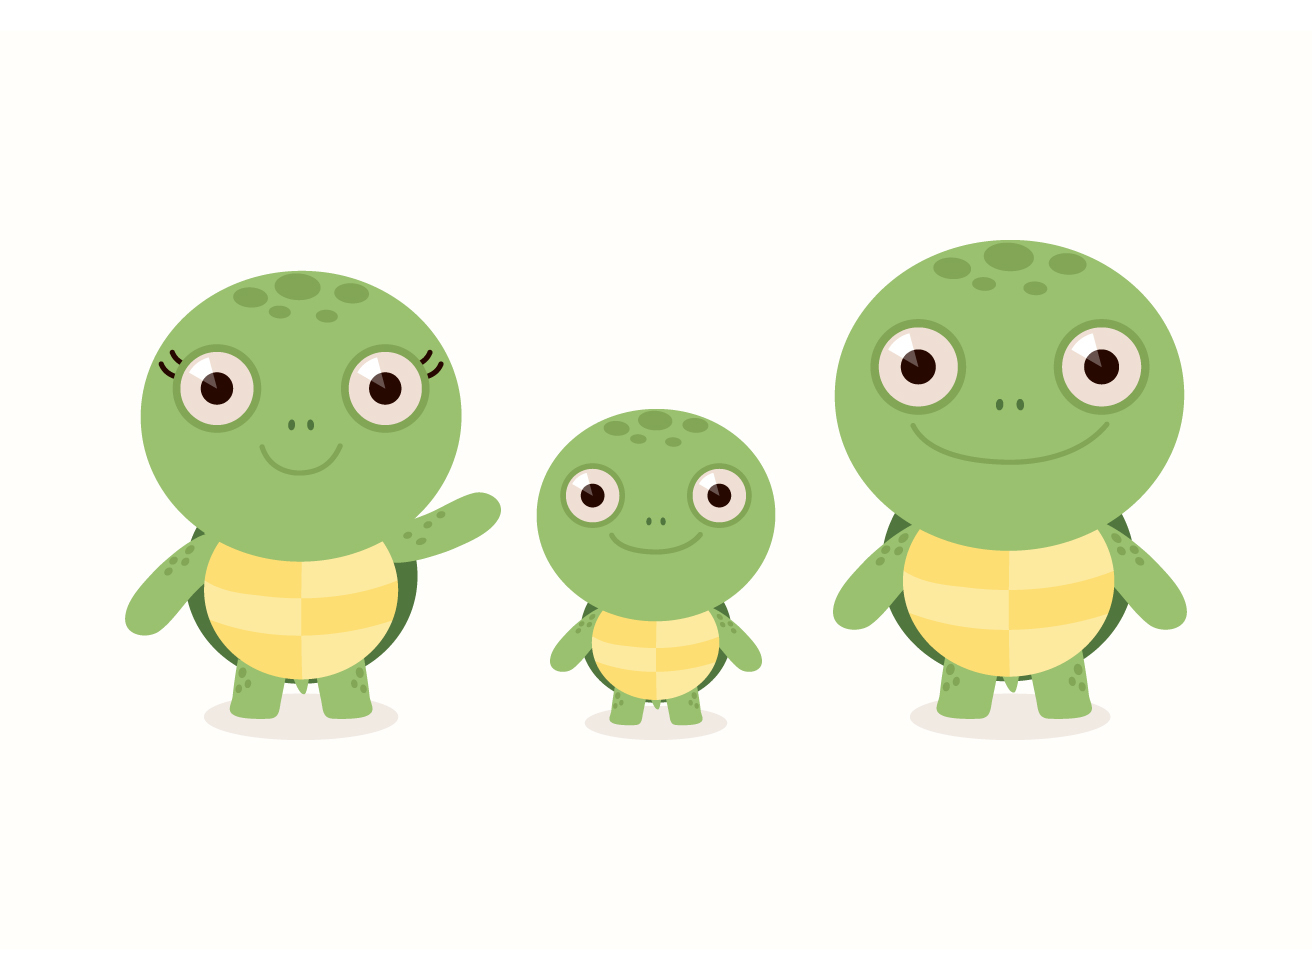 Download Free Vector Cartoon Turtle Set Vector Art & Graphics ...